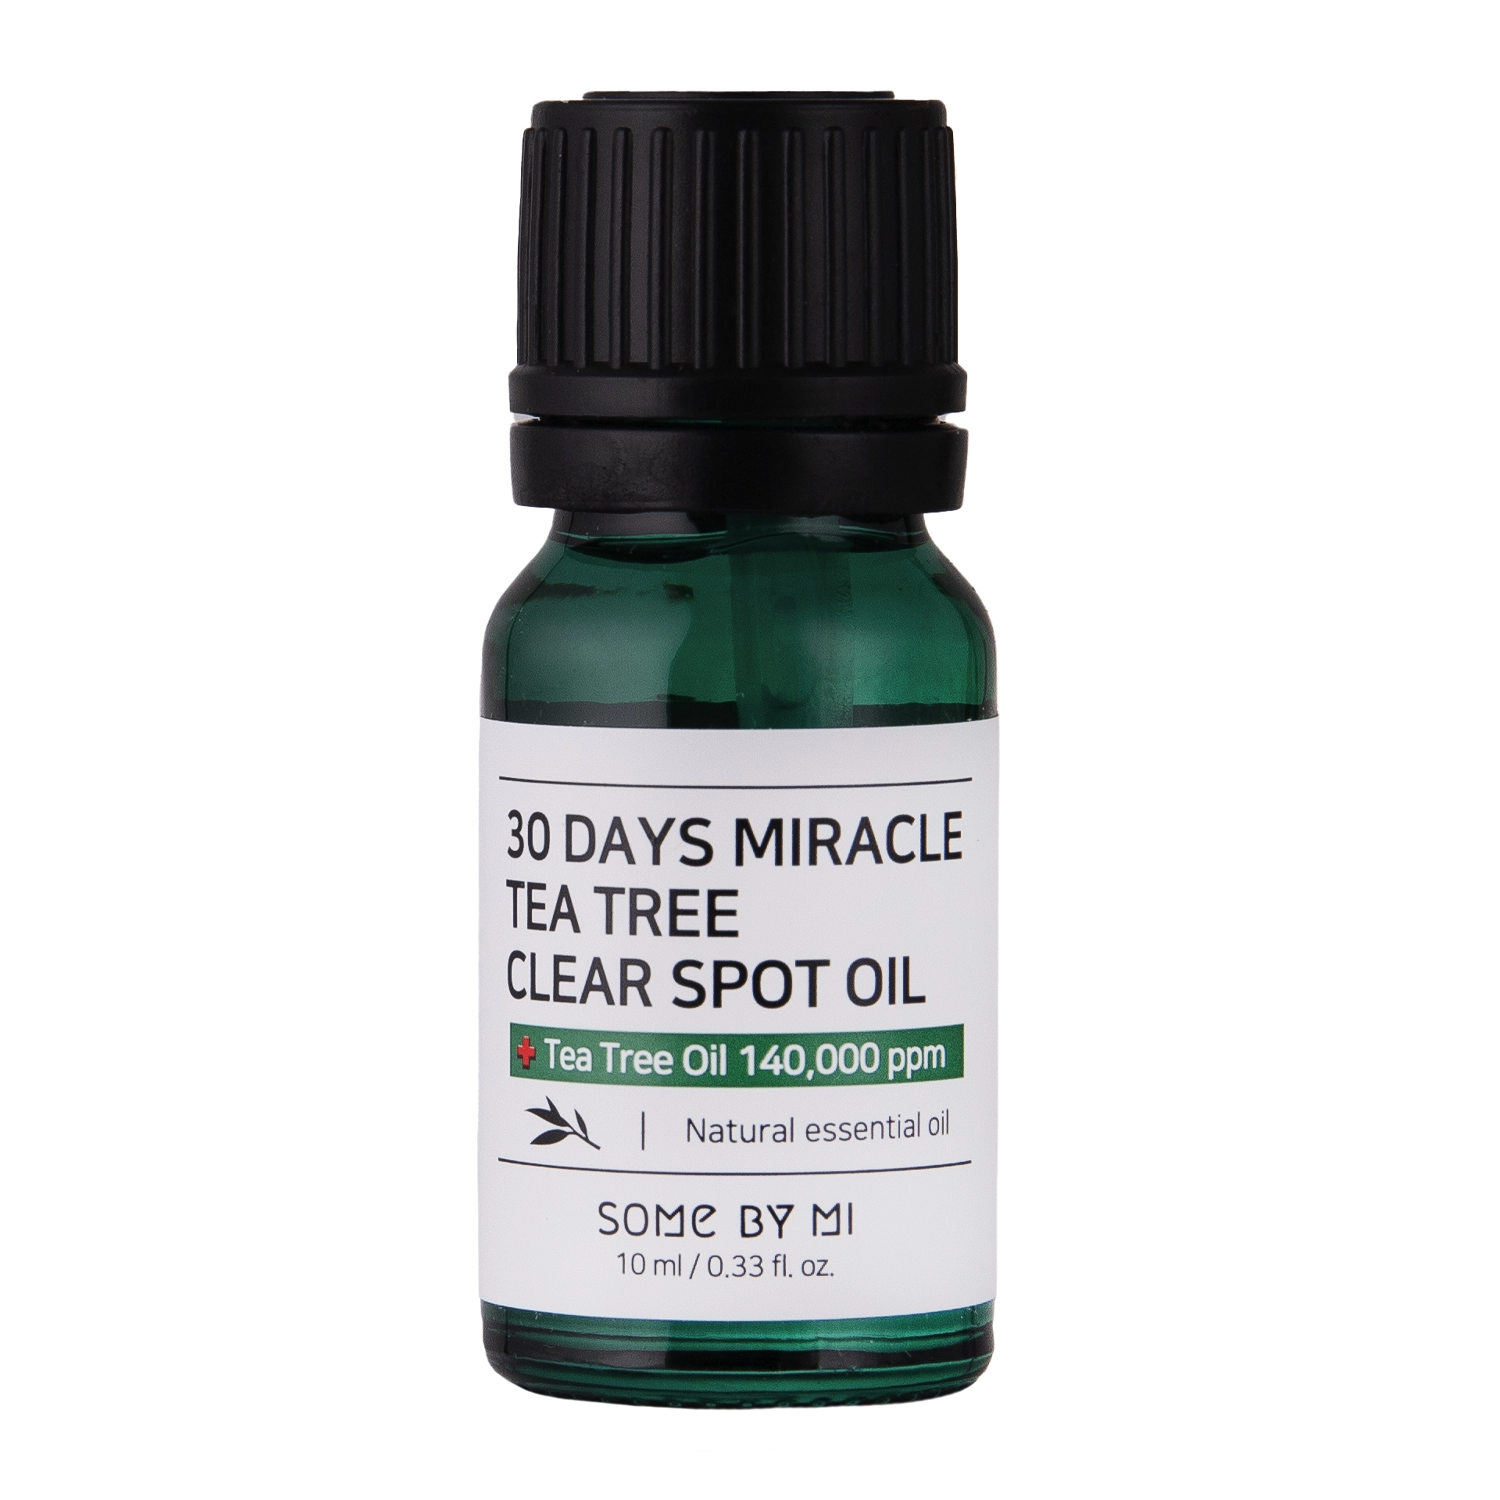 Some By Mi - 30 Days Miracle Tea Tree Clear Spot Oil - Препарат для місцевого лікування запалень - 10ml